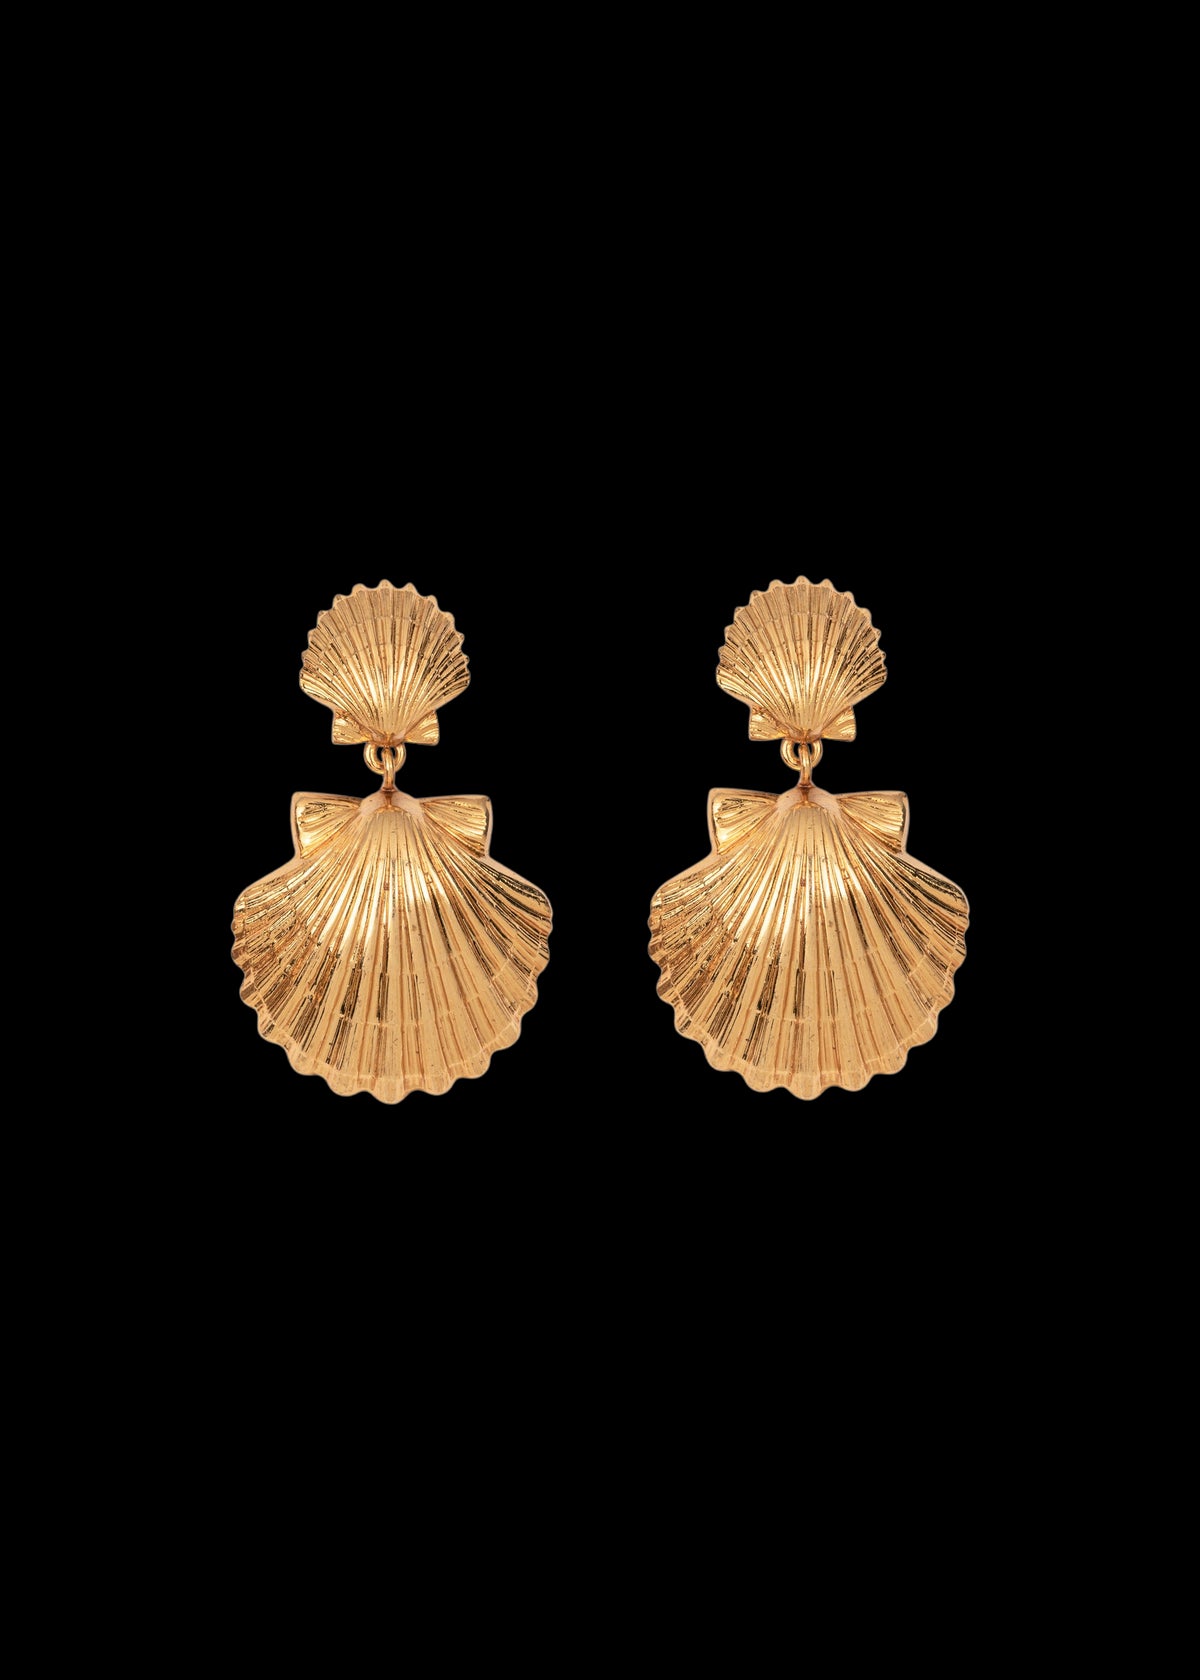 Caspian Earrings in Gold